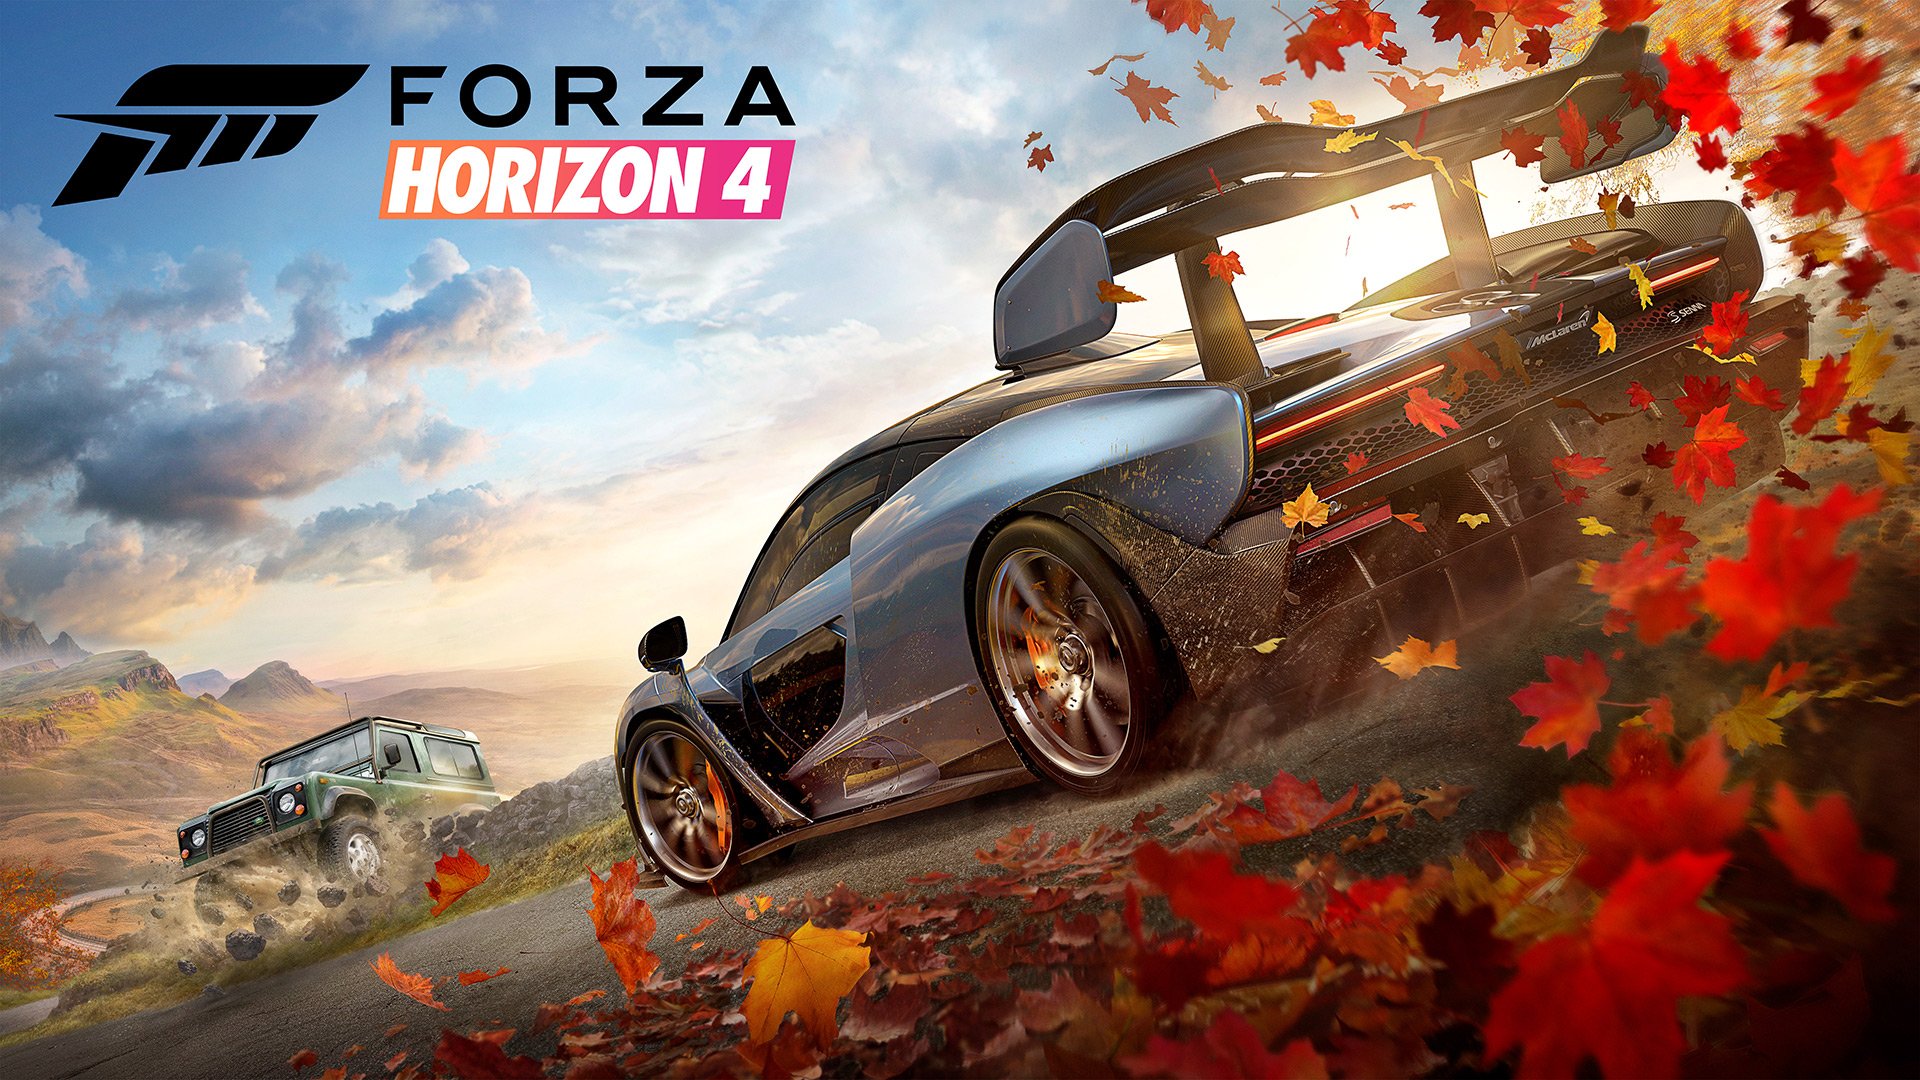 ForzaHorizon4 Review 01